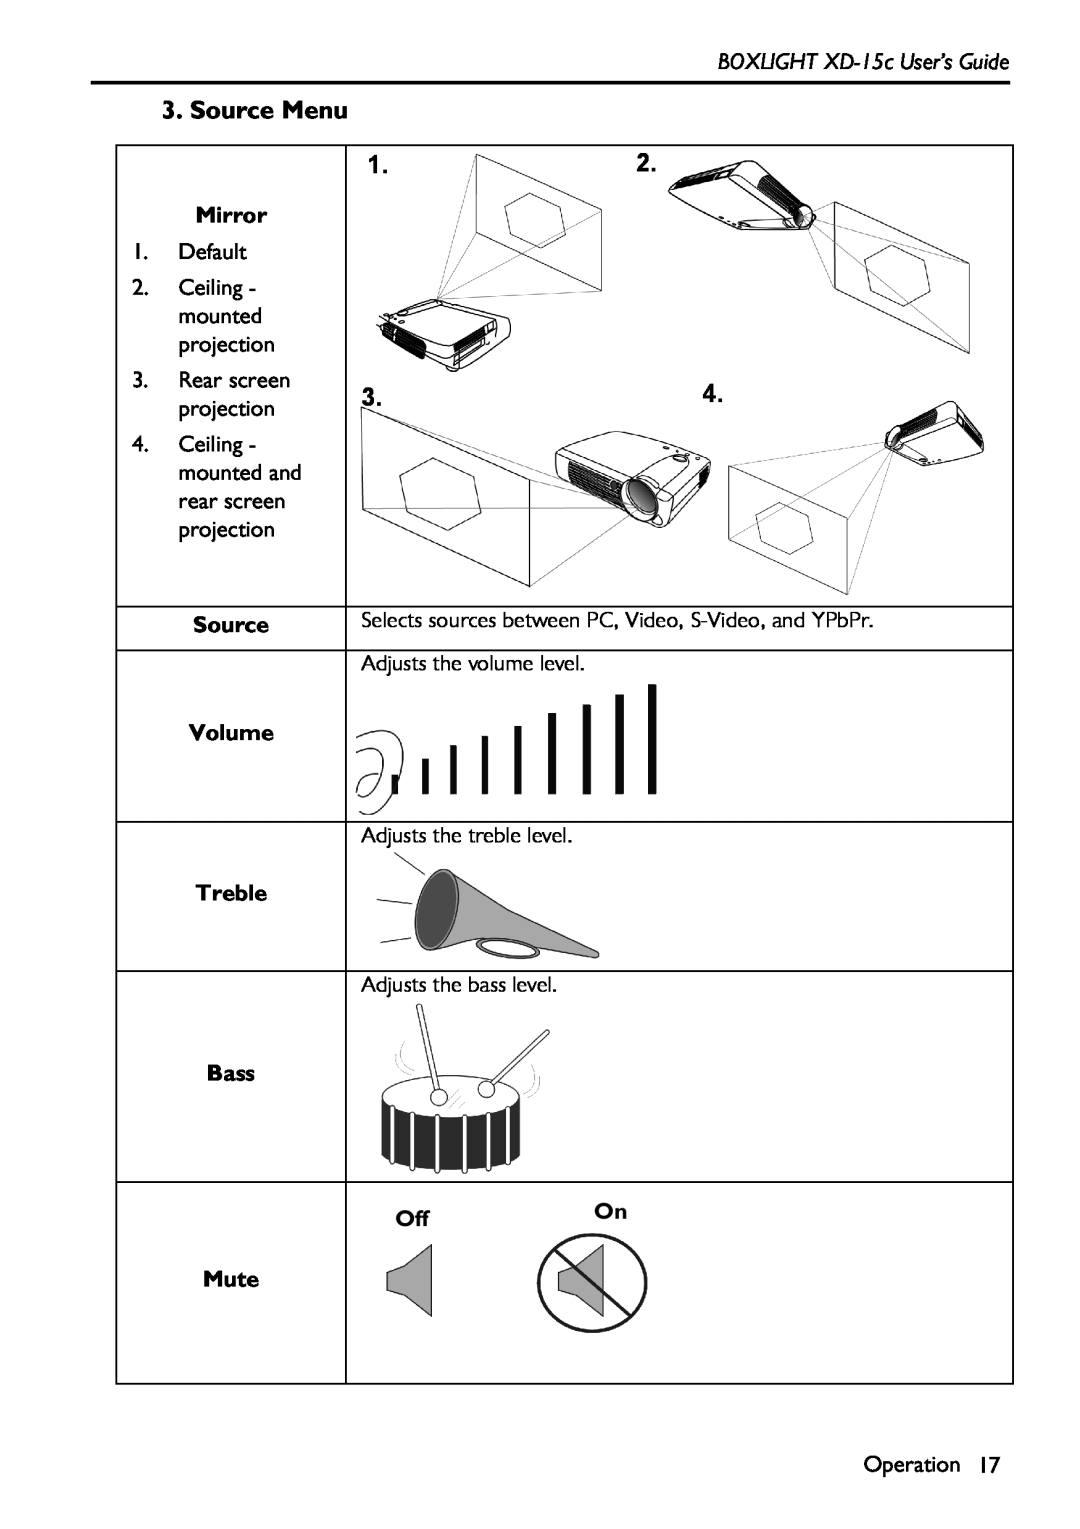 BOXLIGHT manual Source Menu, BOXLIGHT XD-15c User’s Guide, Mirror, Volume, Treble, Mute 